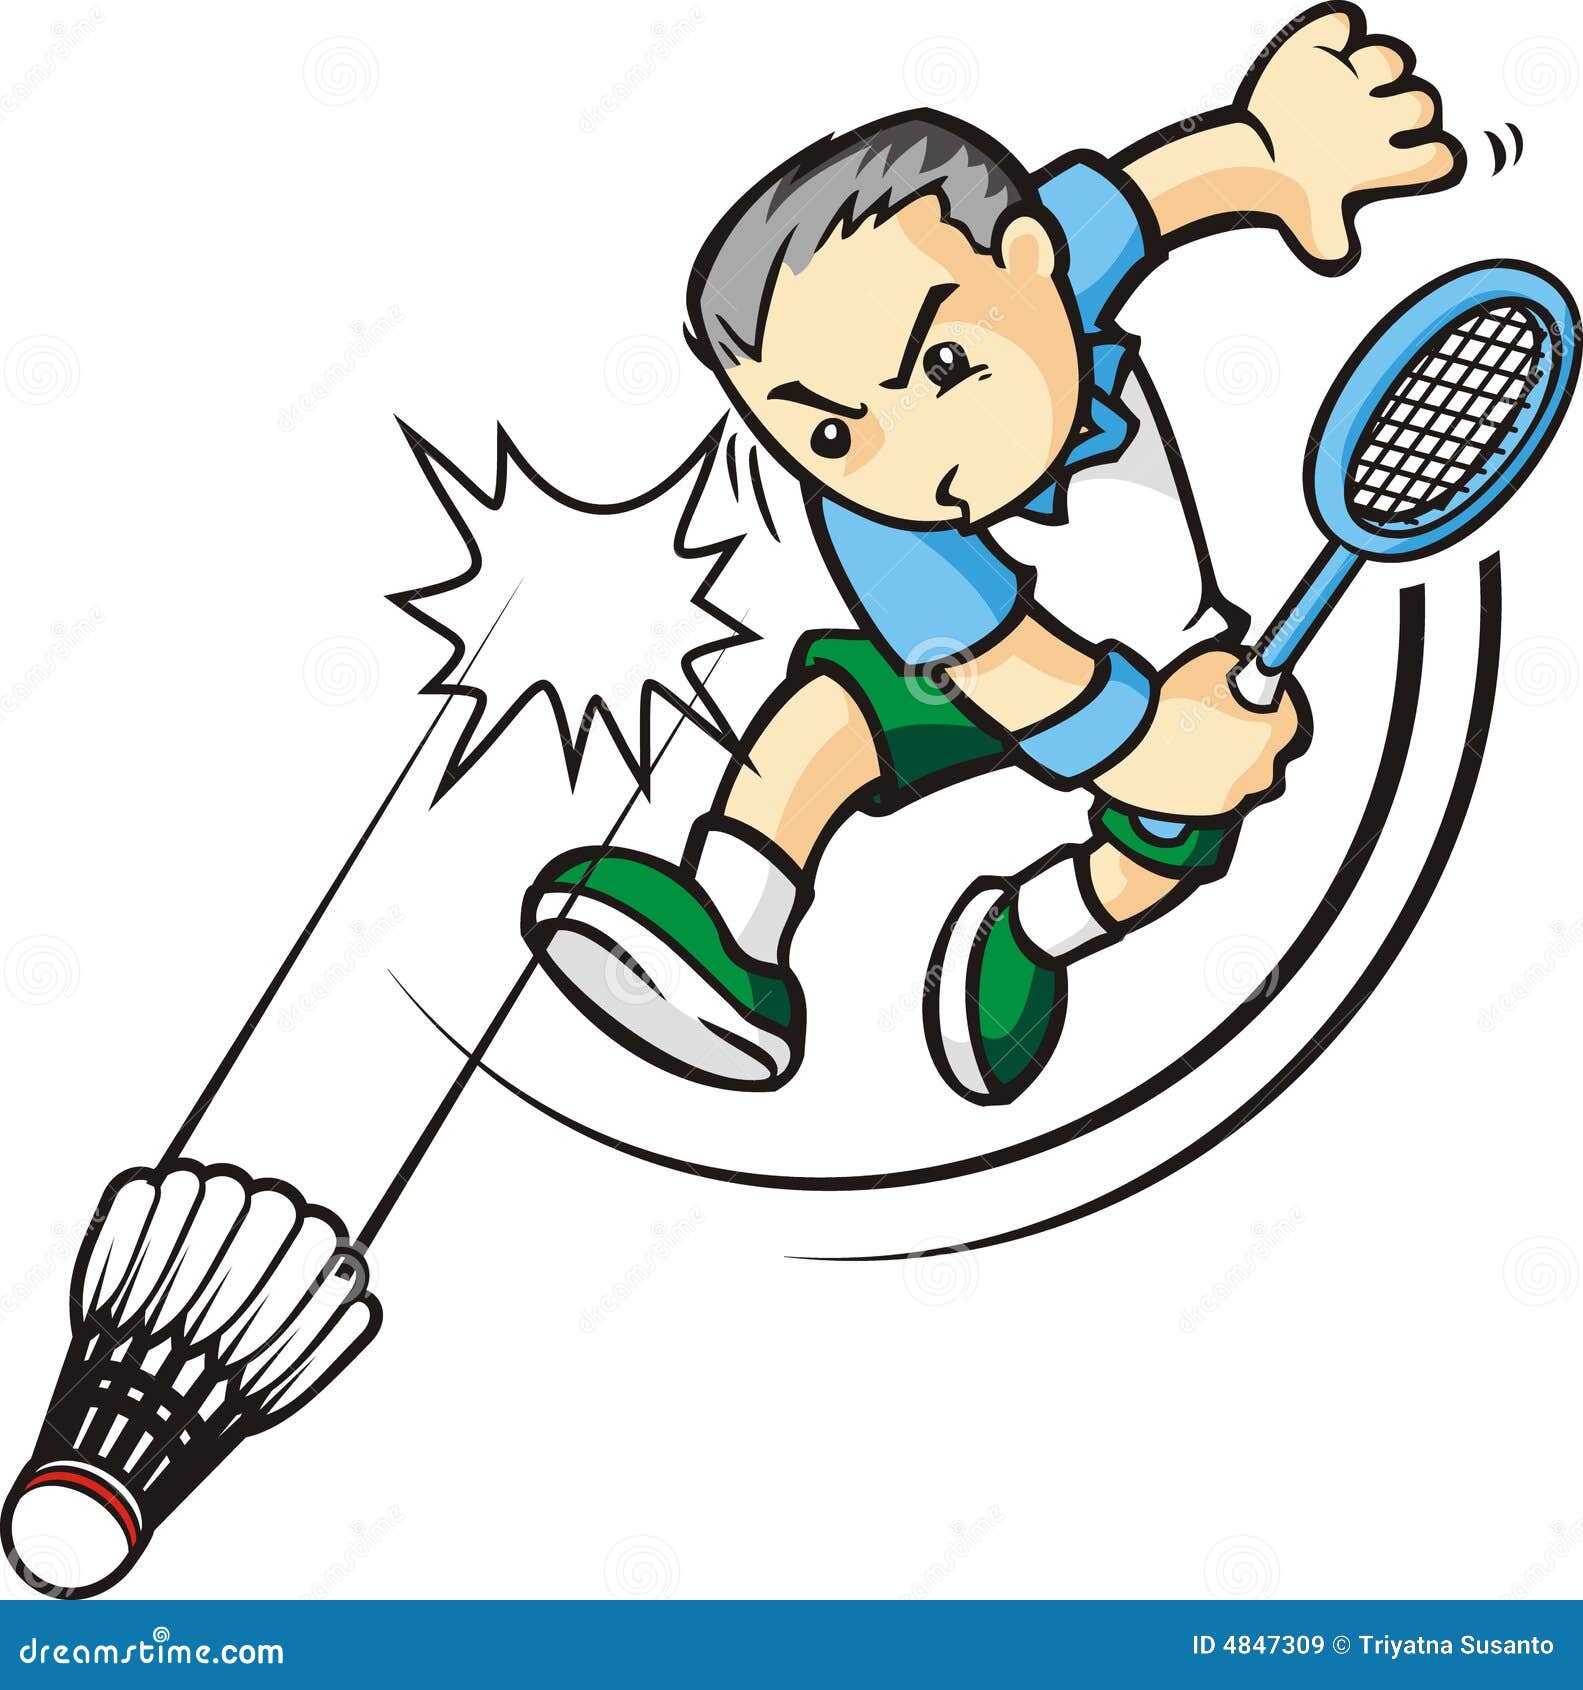 Résultat de recherche d'images pour "dessin badminton"